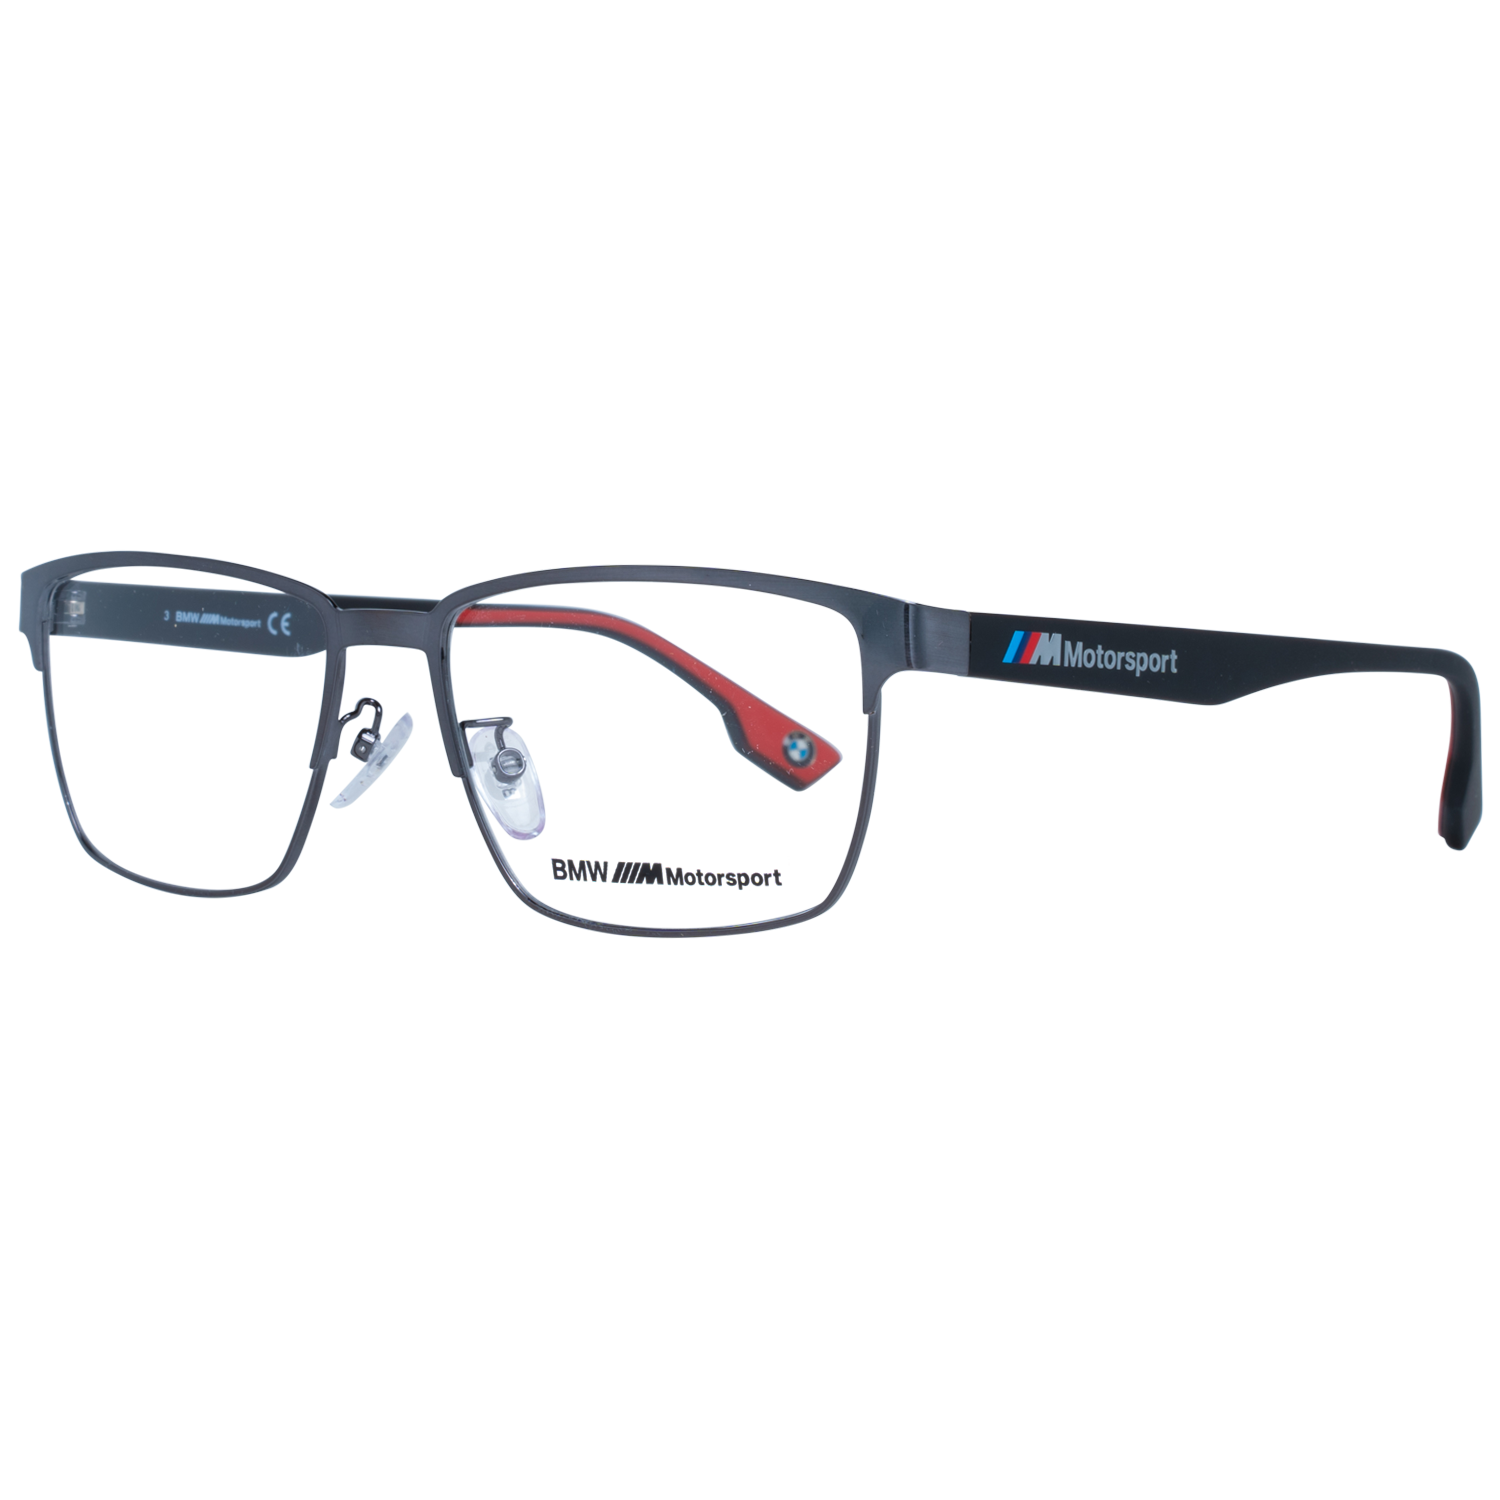 BMW Motorsport Frames BMW Motorsport Glasses Frames BS5005-H 008 56mm Eyeglasses Eyewear UK USA Australia 